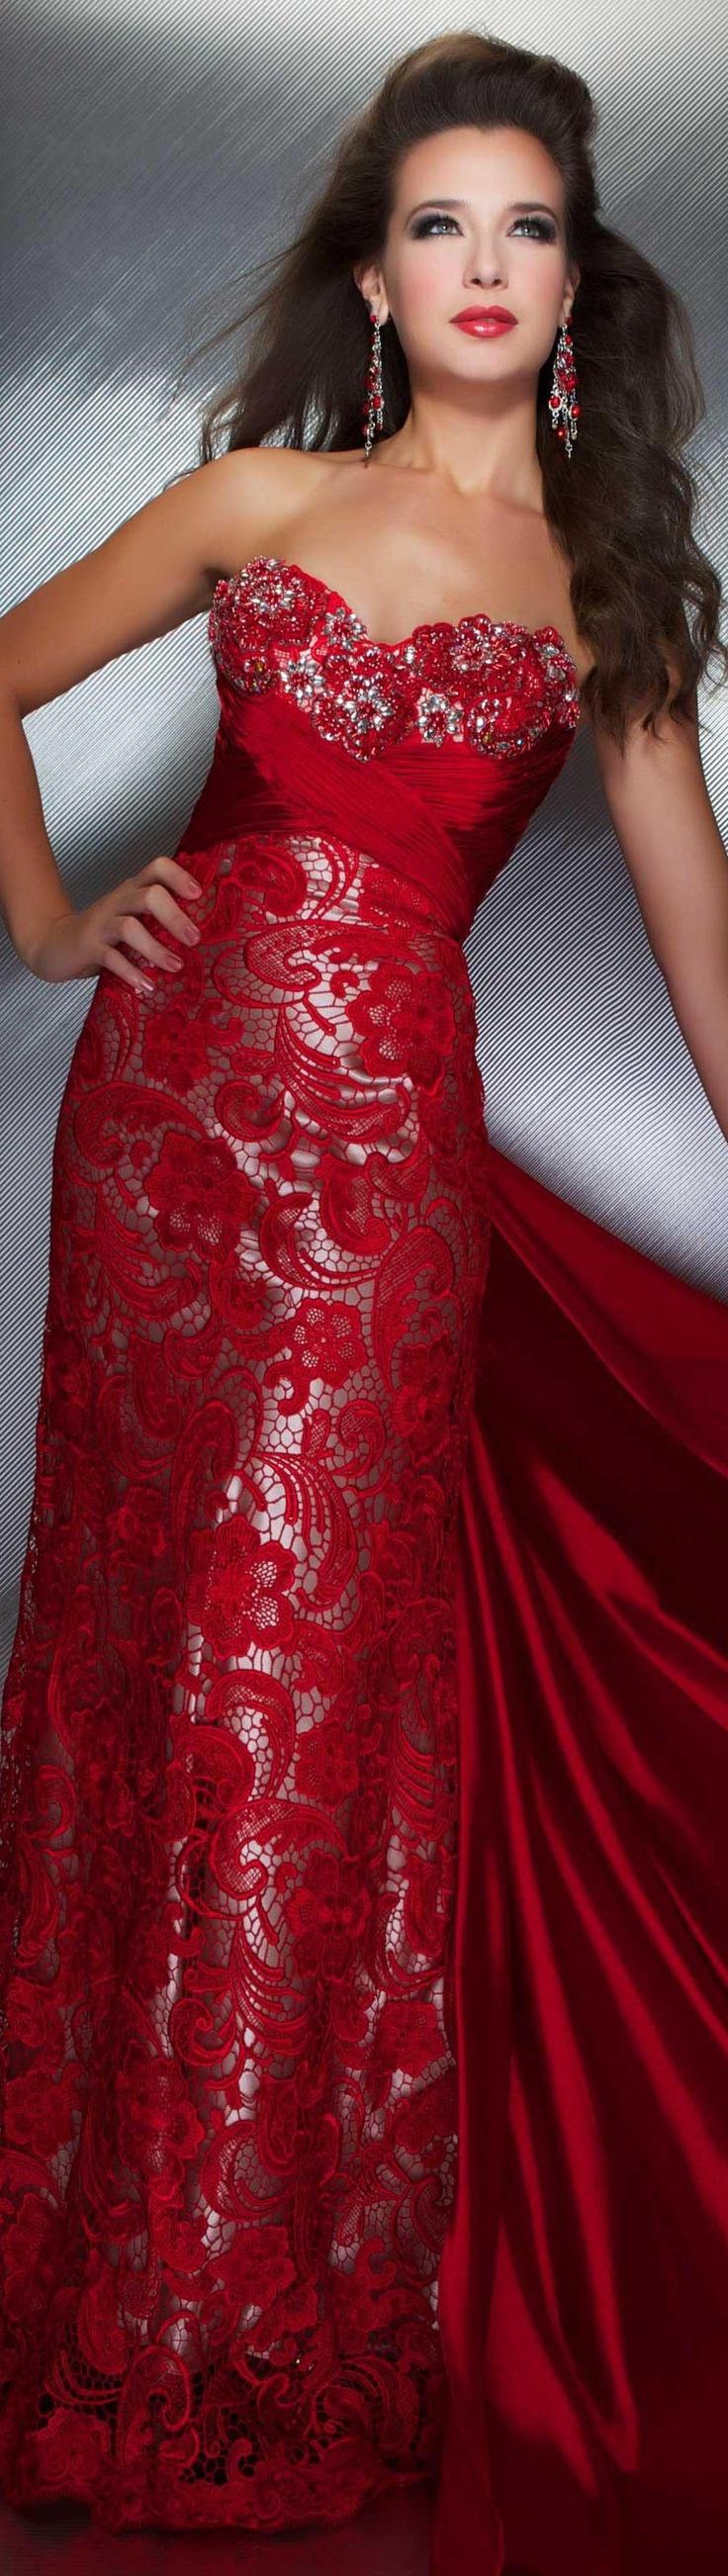 زفاف - Prom Gown With Lace Detailing And High Slit 